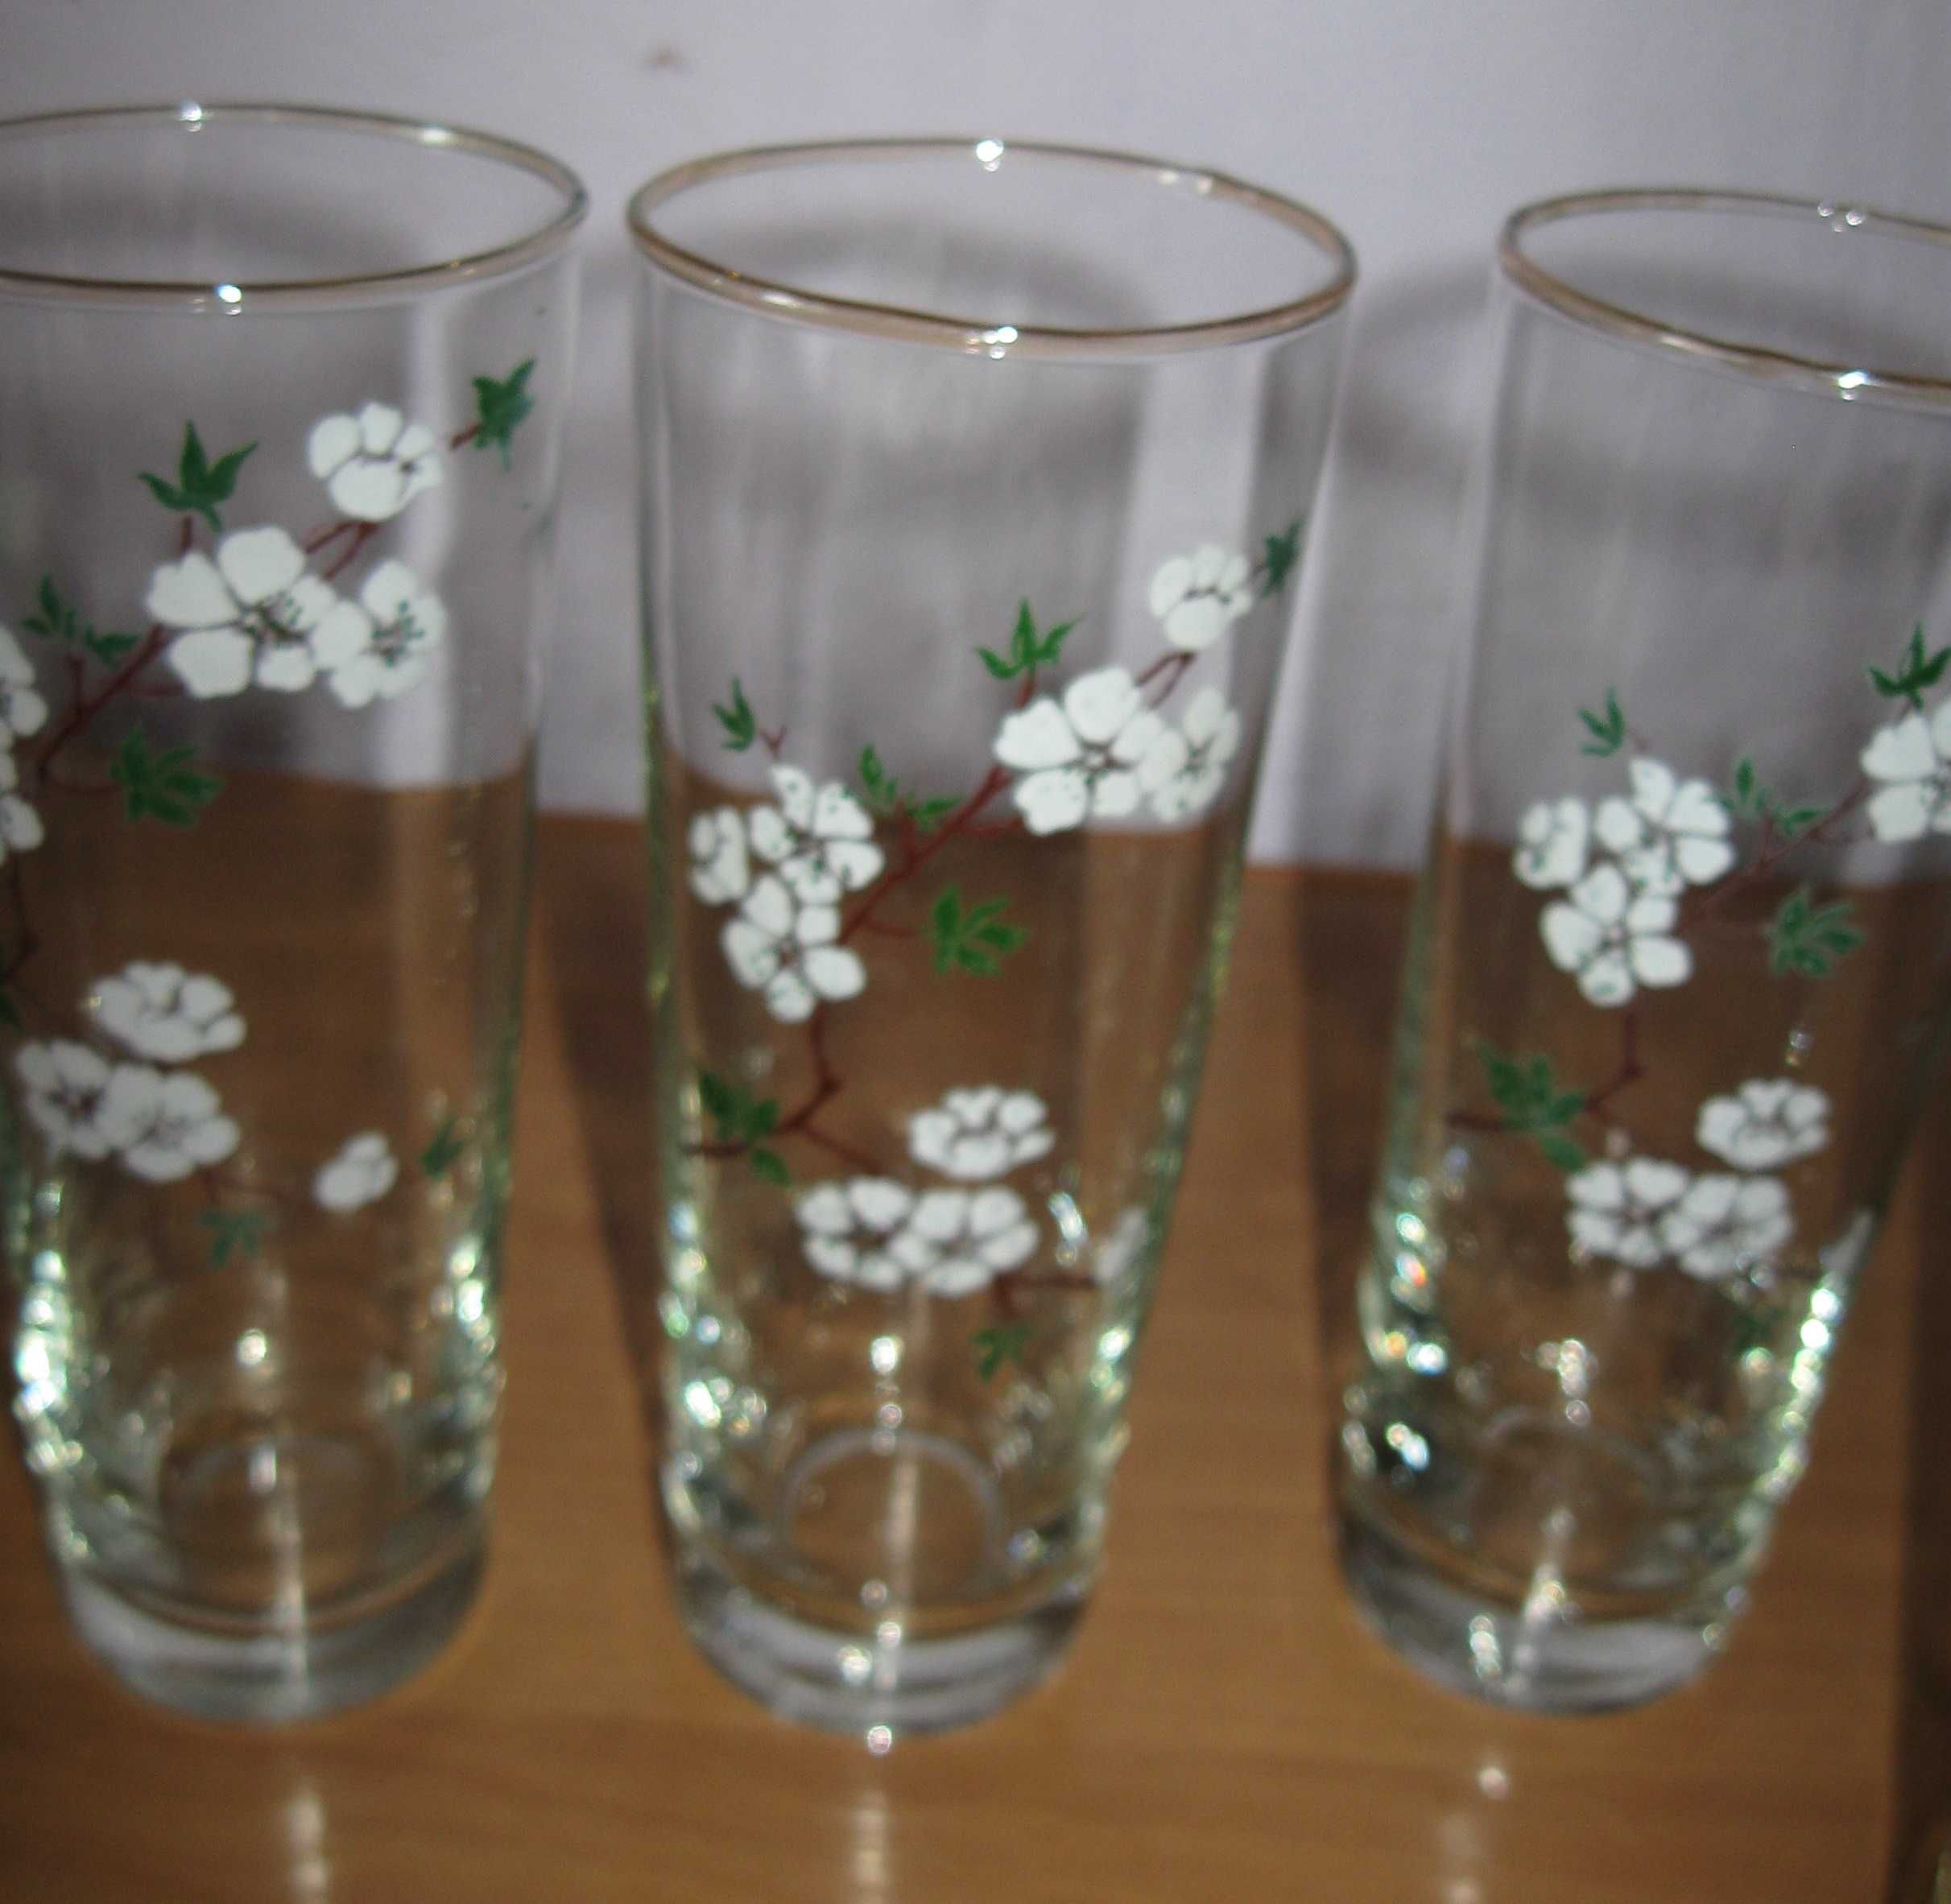 стаканы для сока с рисунком белых цветочков 5 штук